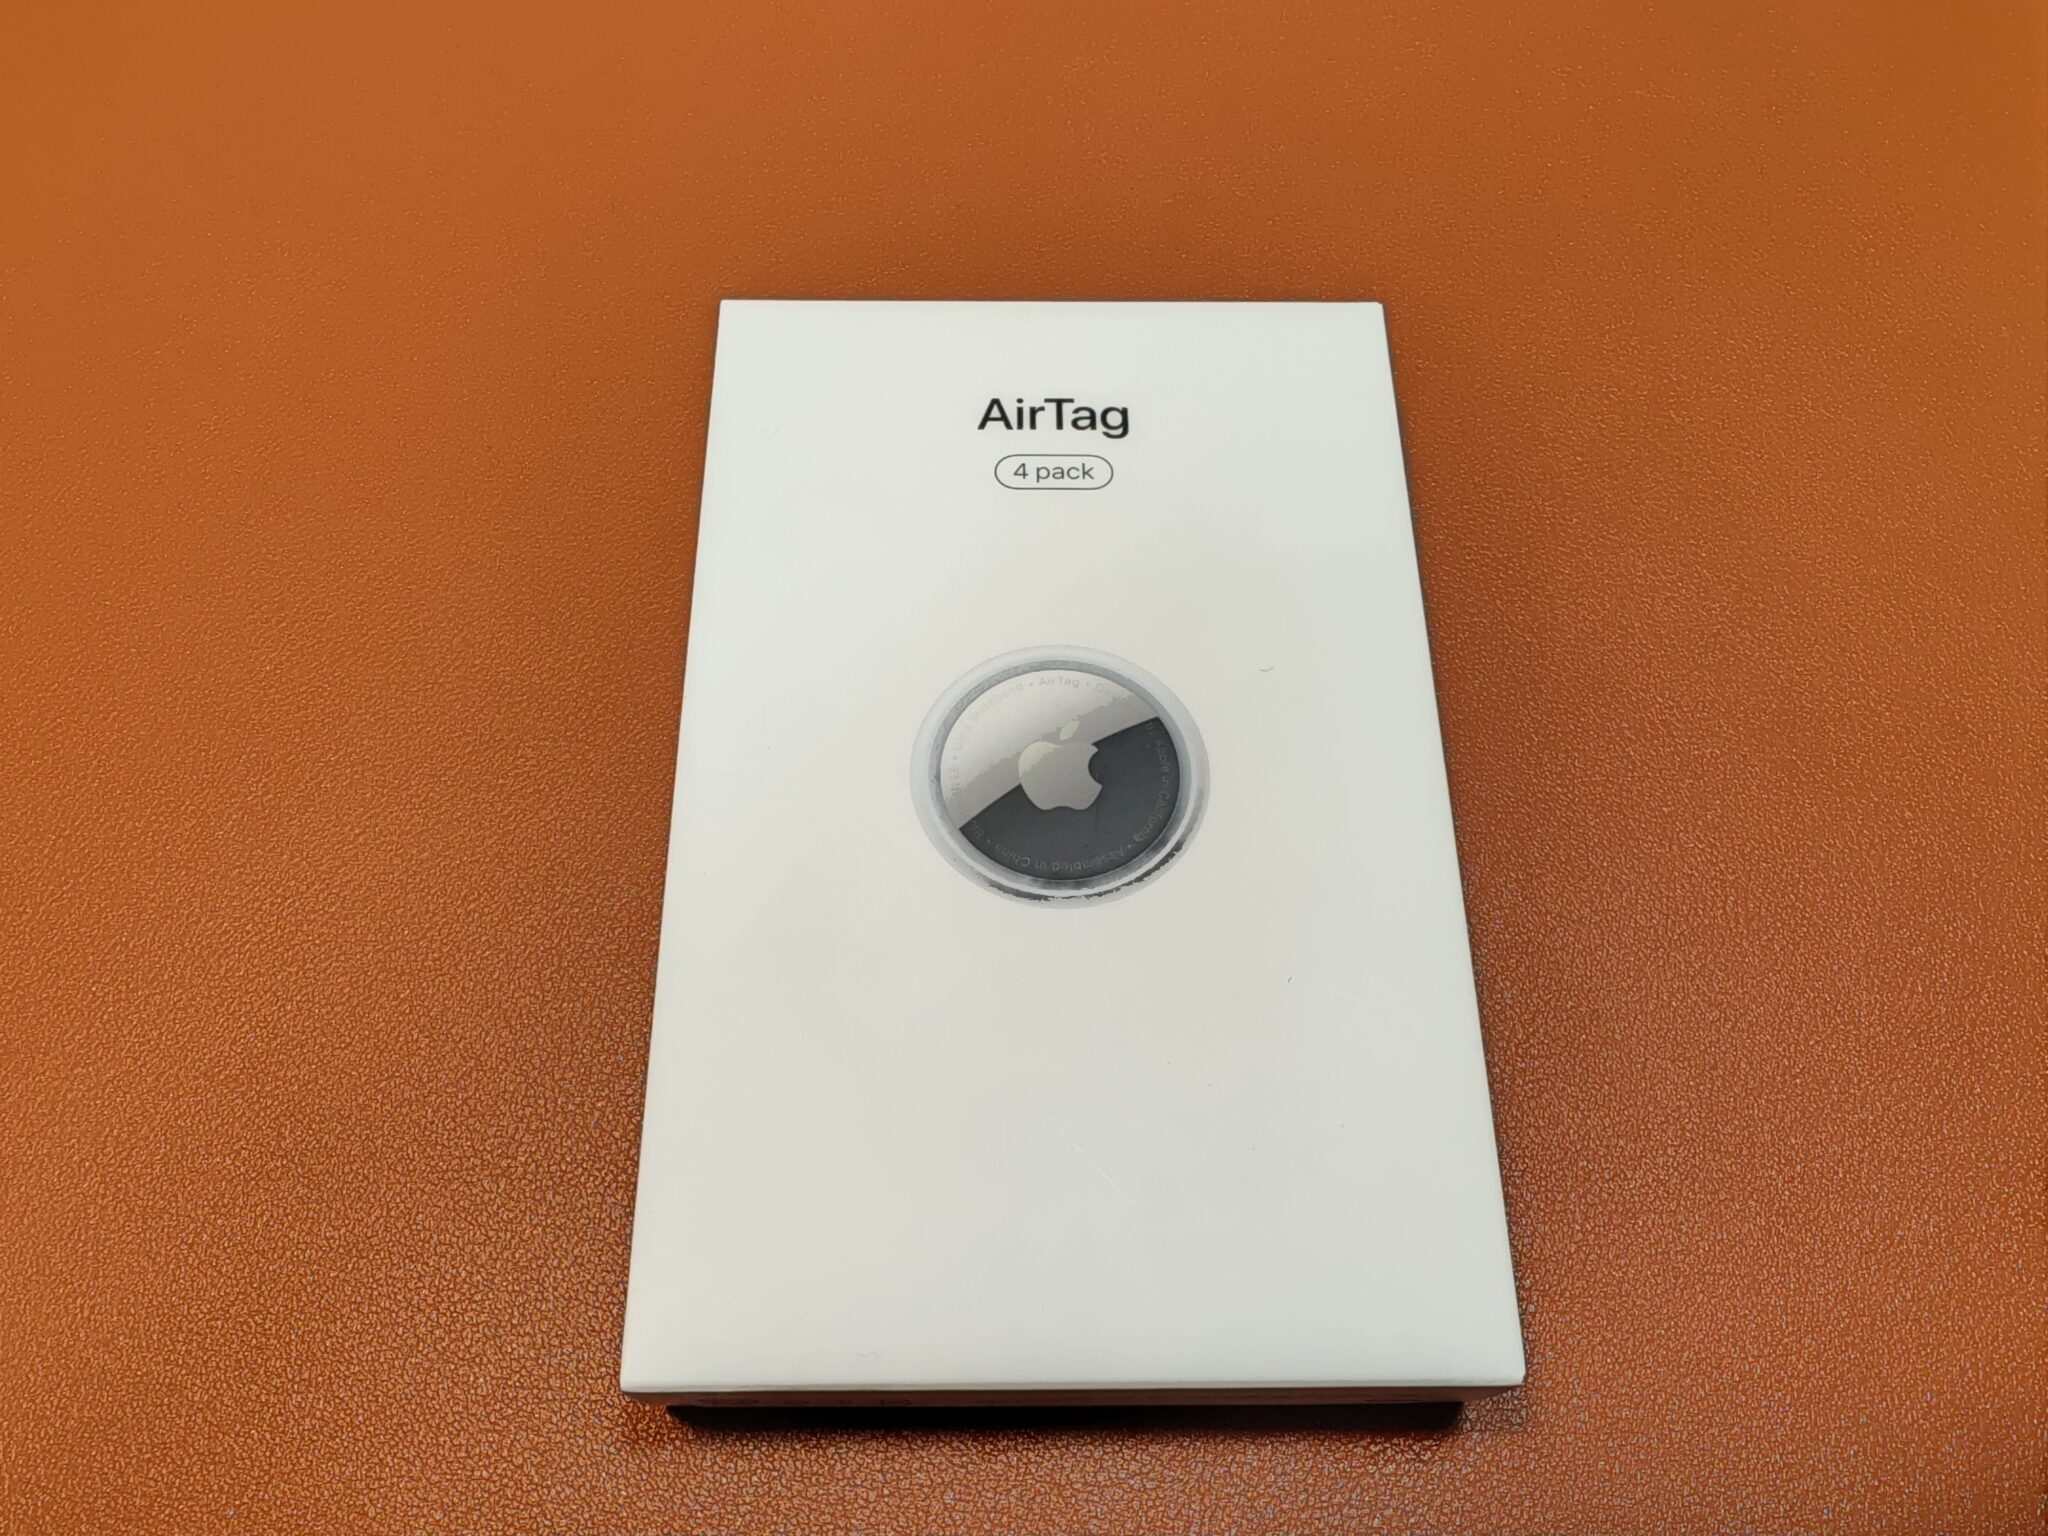 Airtagを何に付ける？4個入りを買ったので思案中です。 Gadget Nyaa Apple・ガジェットブログ